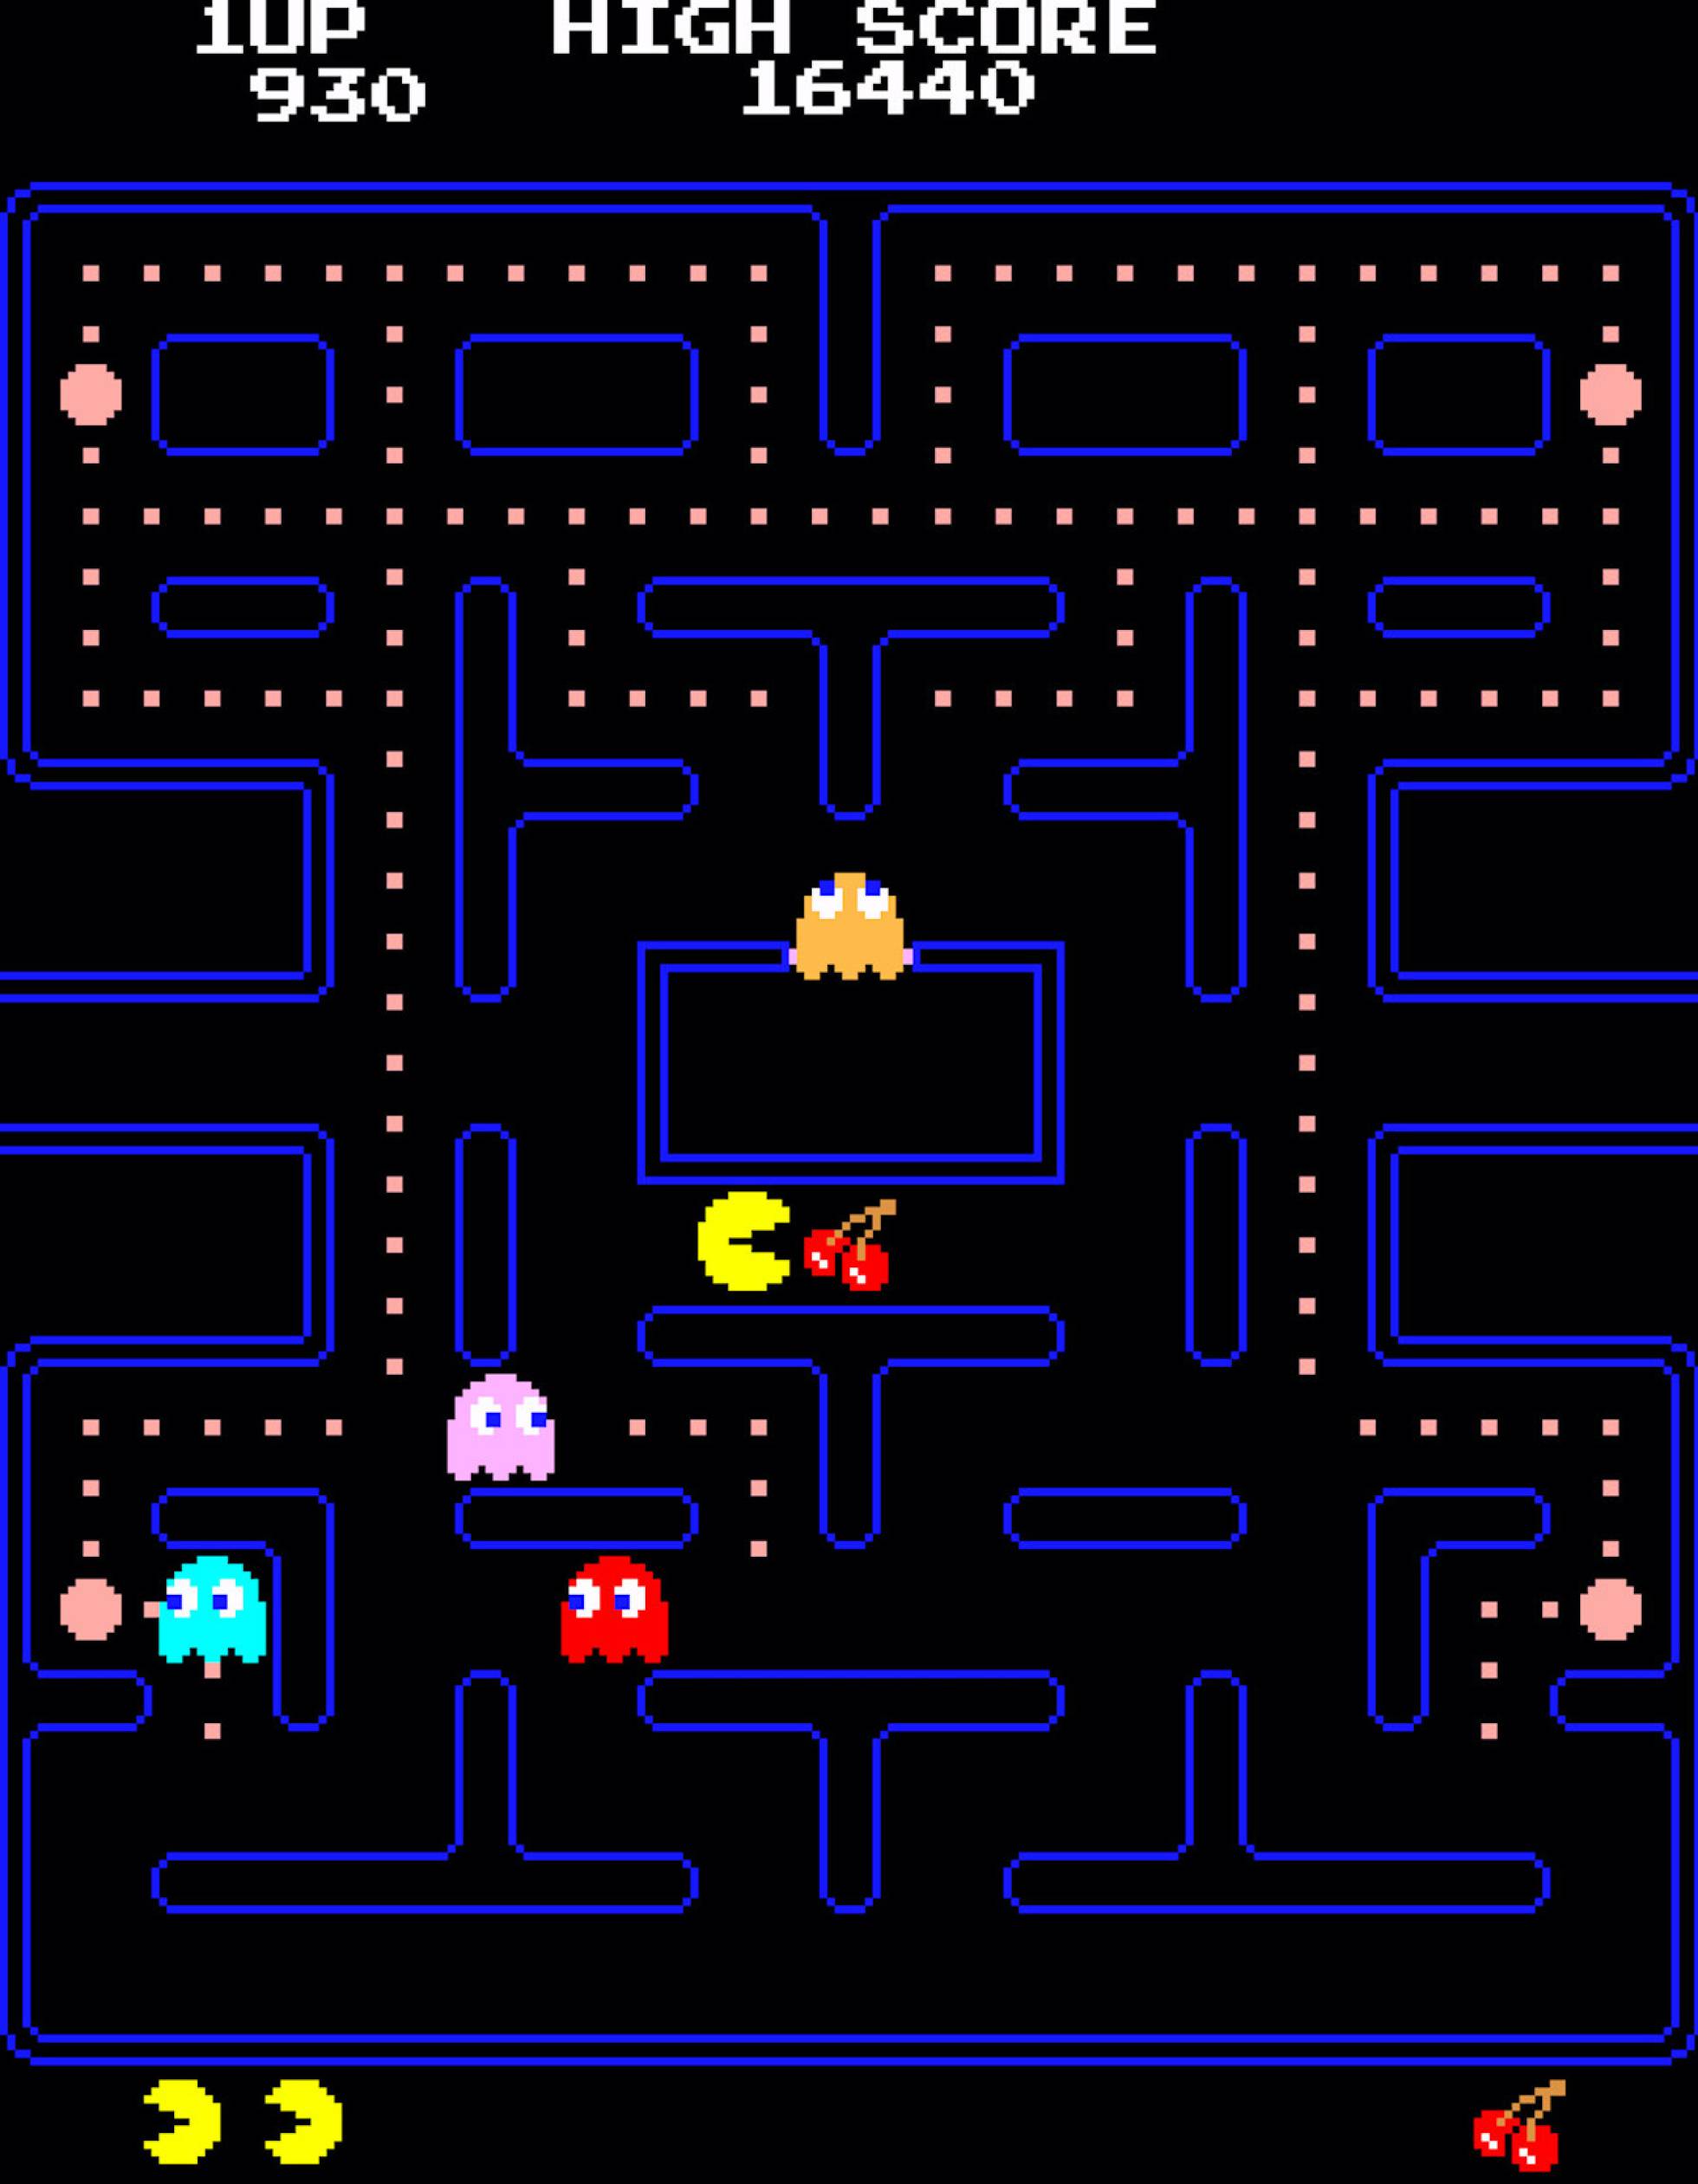 Pac man game. Pac-man 1980. Пэкмэн игра. Игра Pacman 1980. Pacman игра 1980 года.